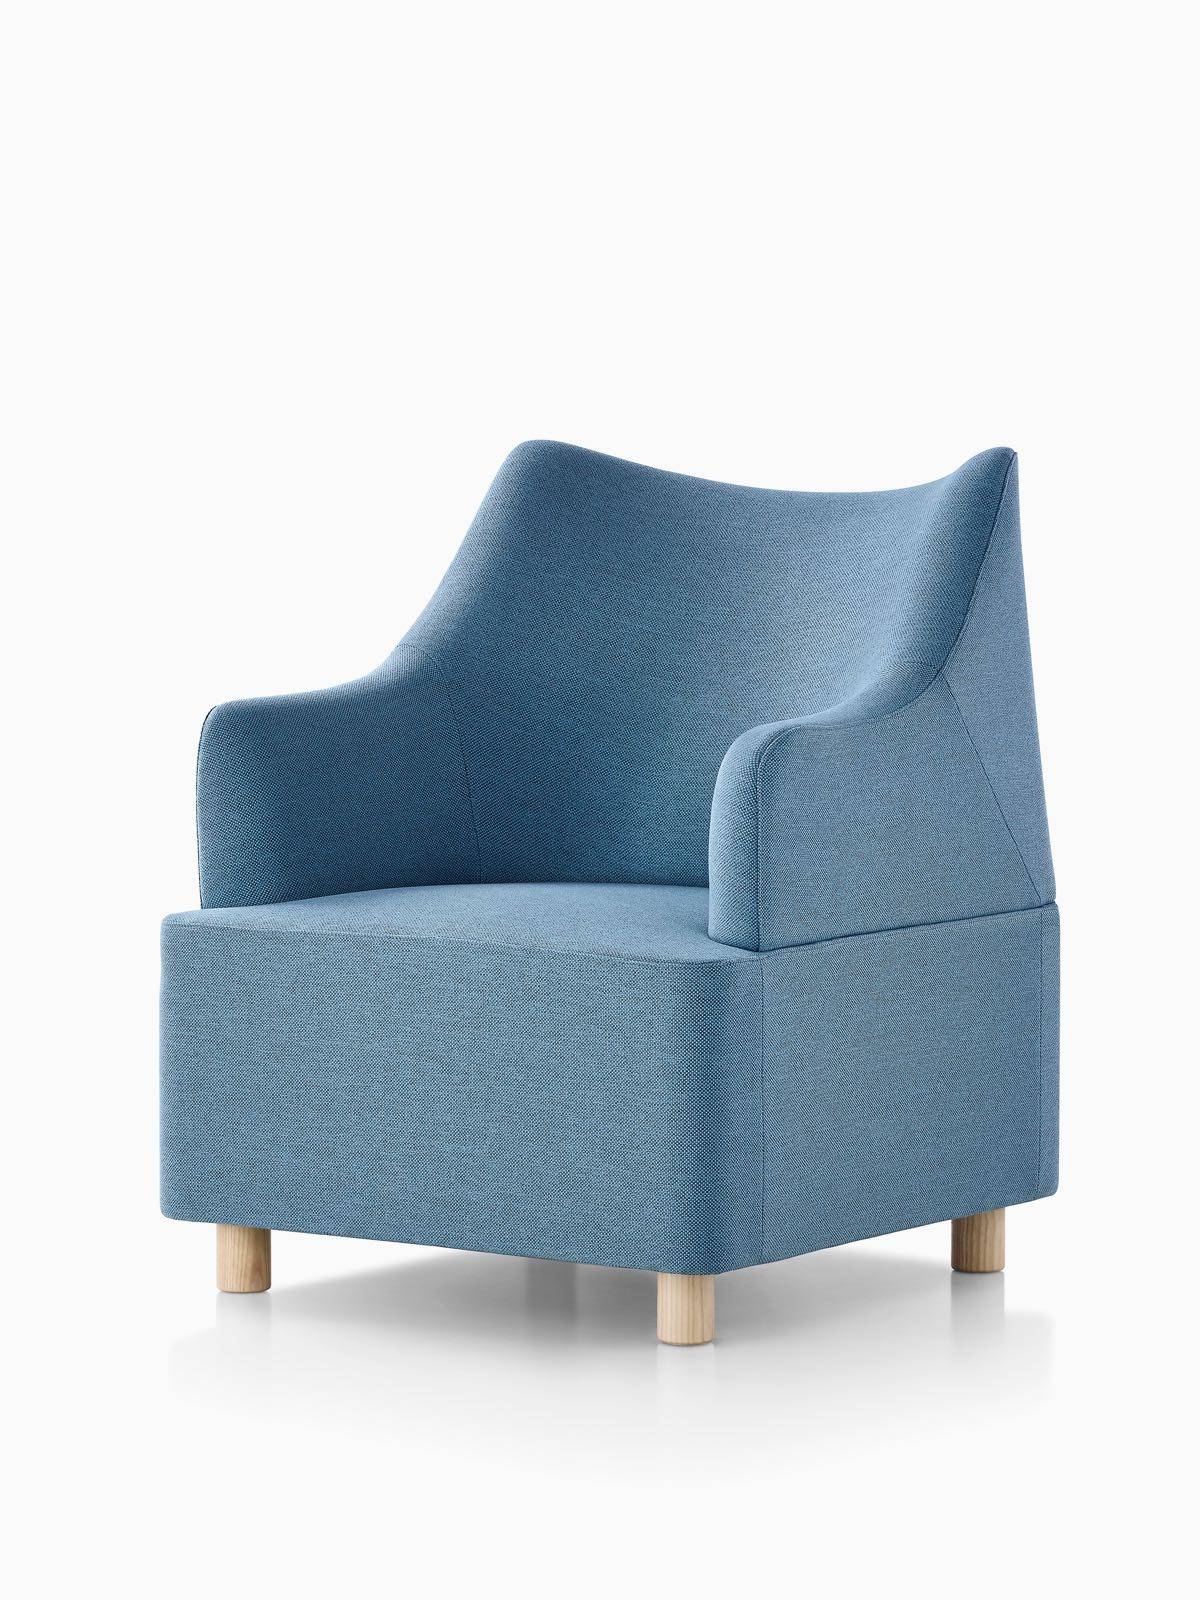 Plex Lounge Furniture